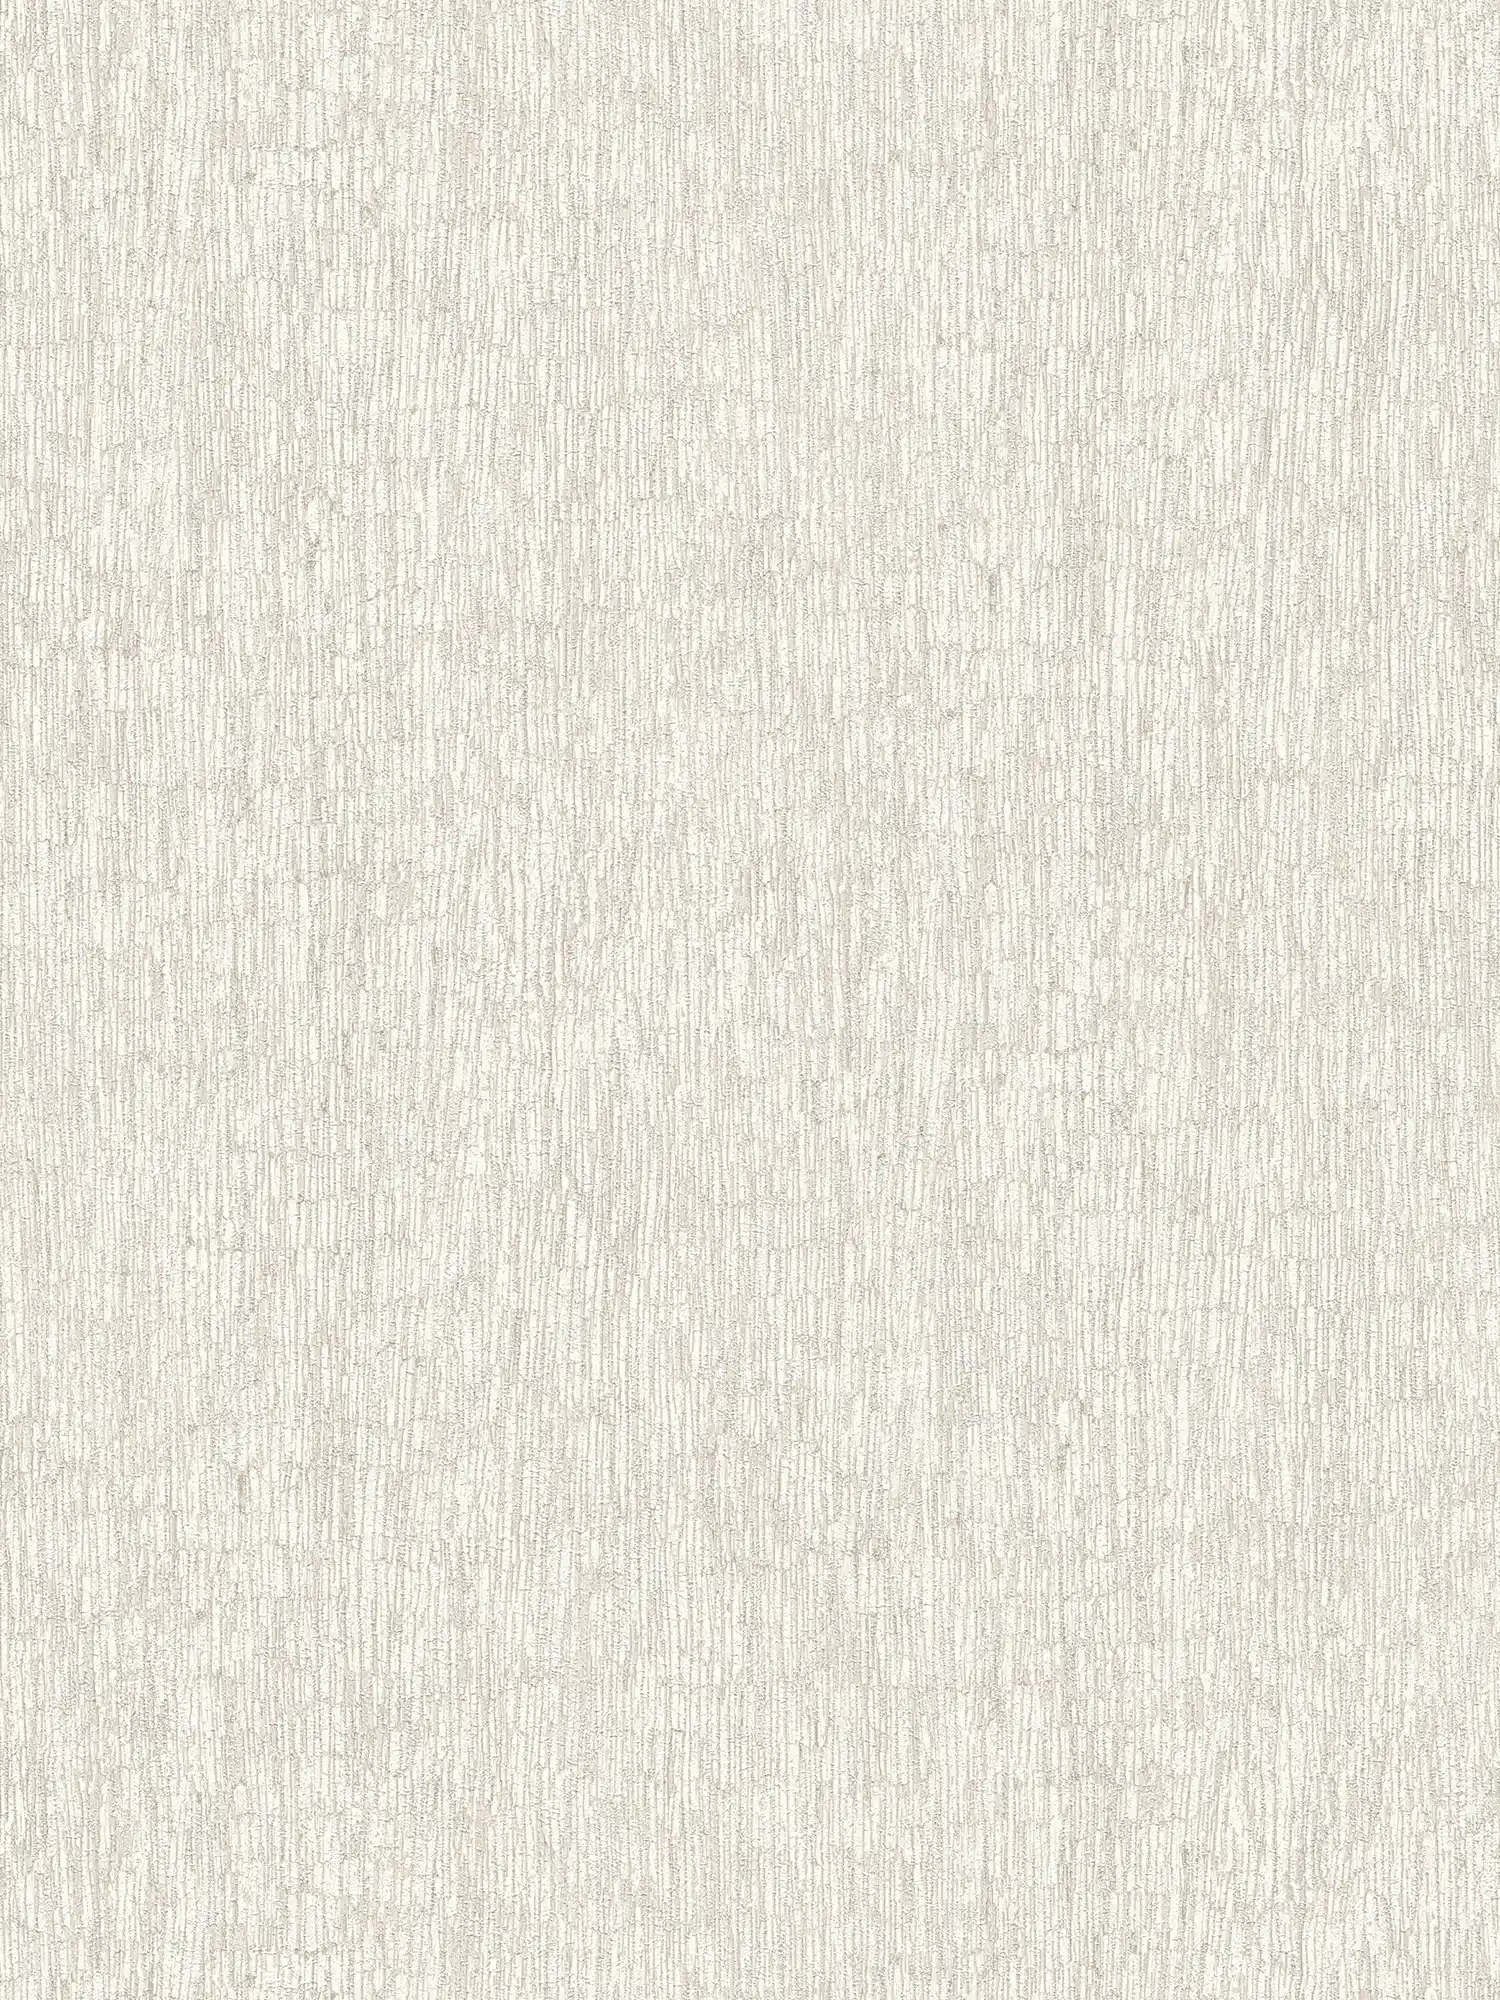 Carta da parati non tessuta in aspetto tessile, leggermente lucido - bianco, grigio, argento
